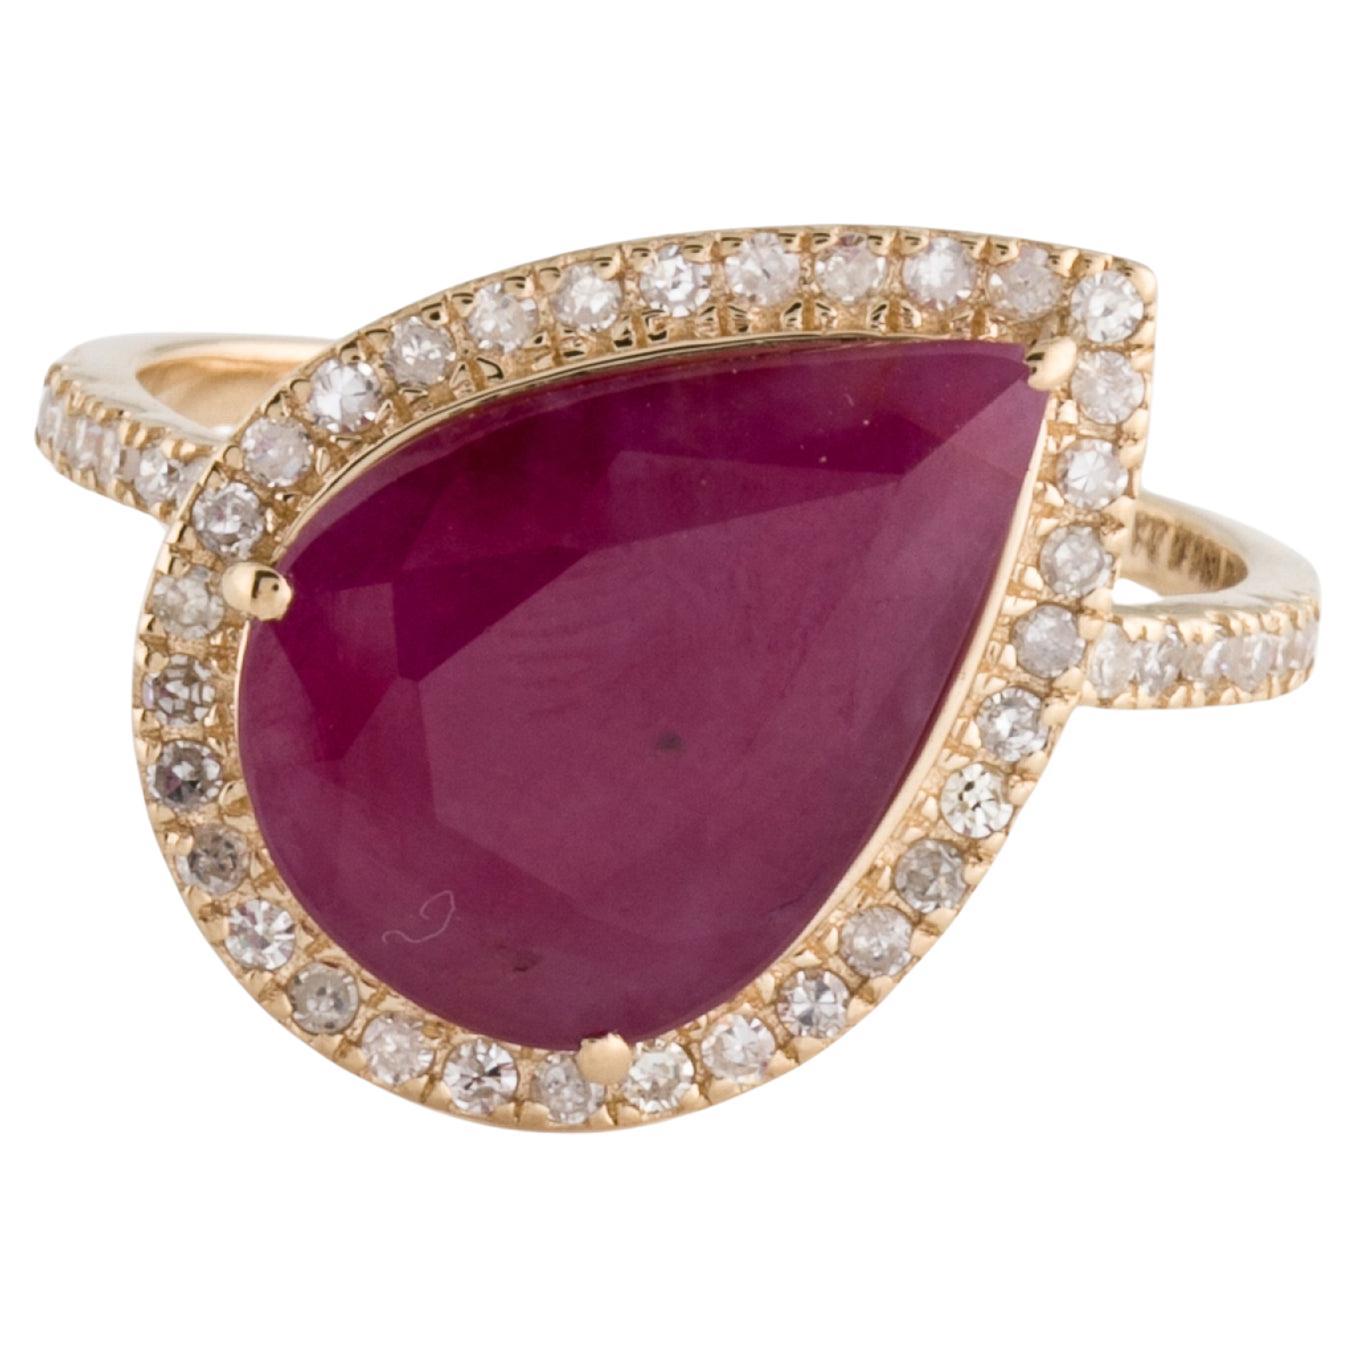 Luxueuse bague cocktail en rubis et diamants 14 carats 5,17 ctw - Taille 8 - Statement Jewelry